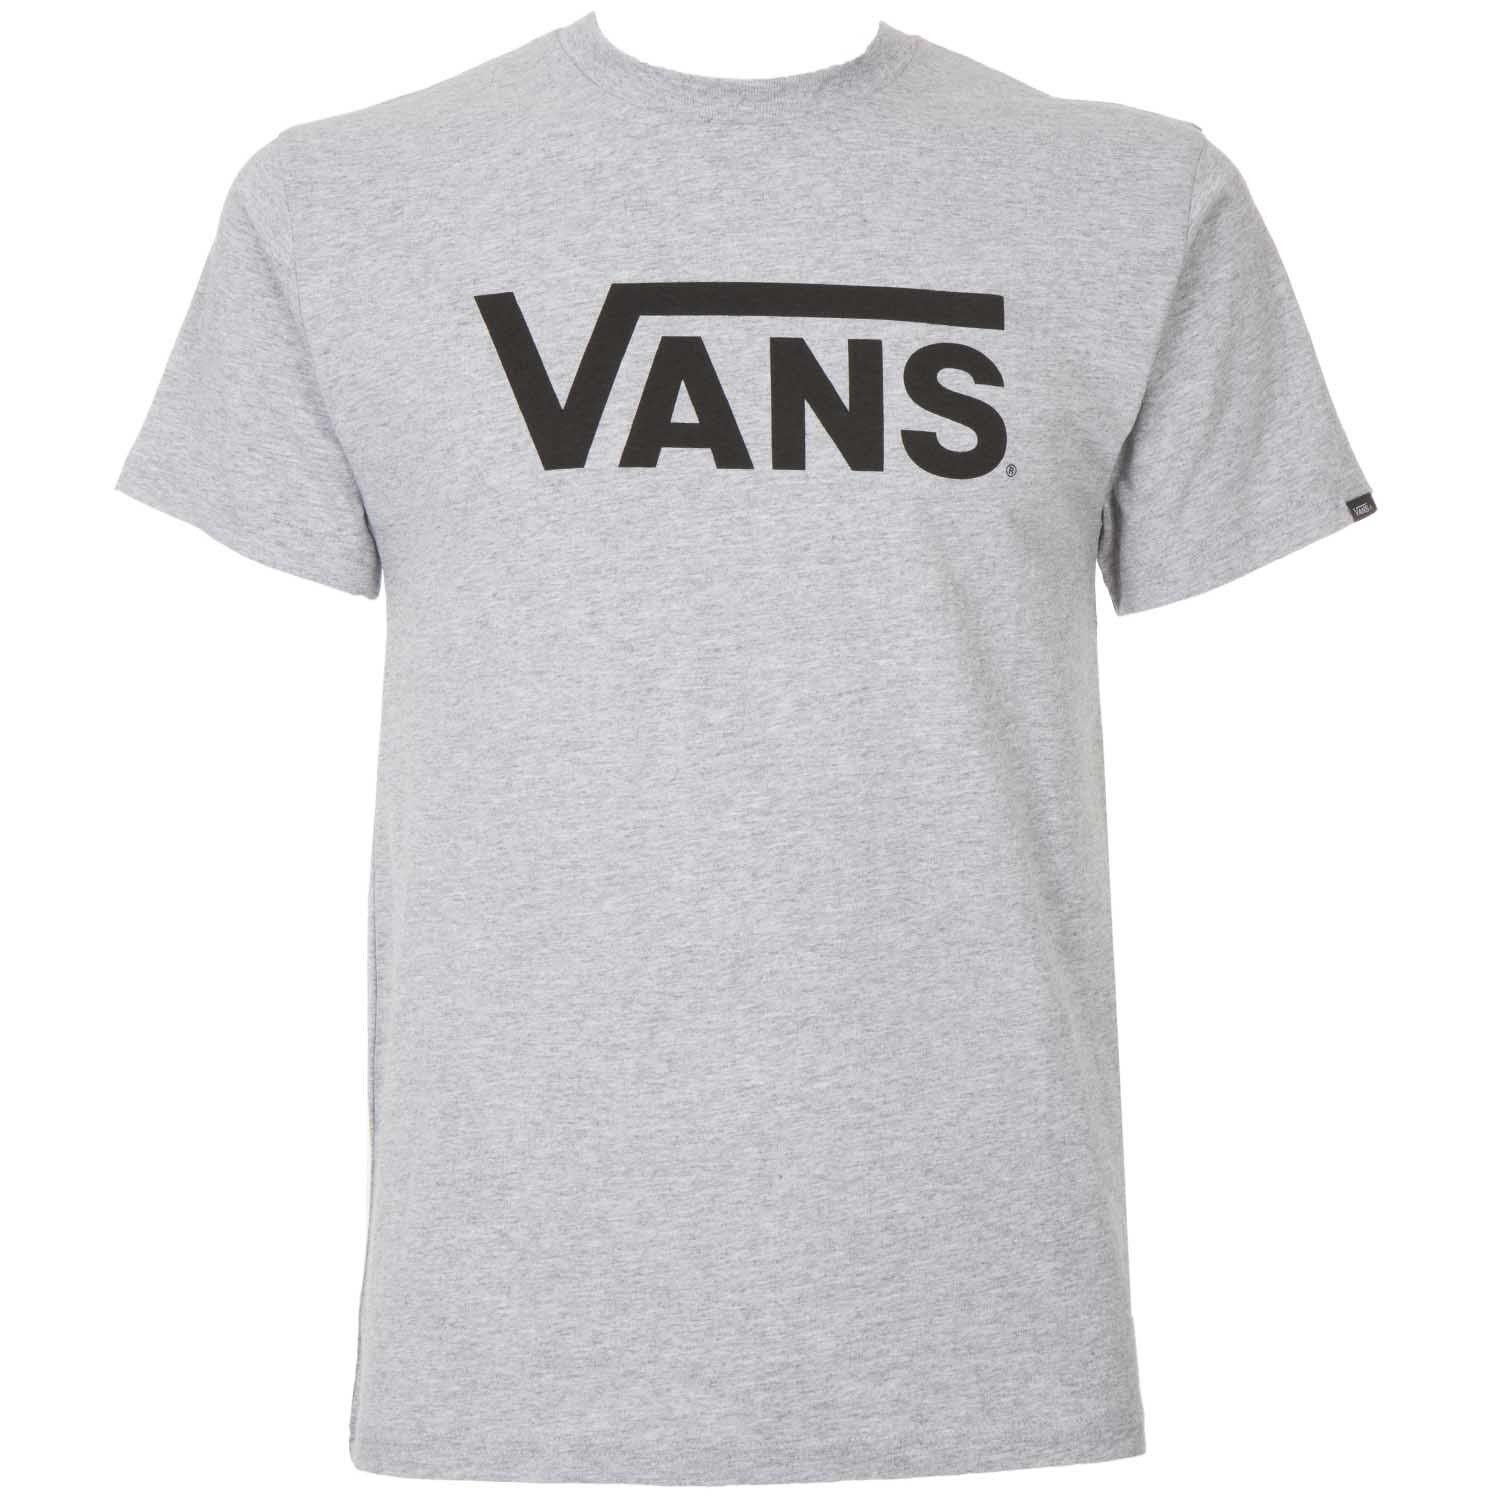 Grey Vans Logo - Vans grey crew-neck t-shirt with black front logo Arteni